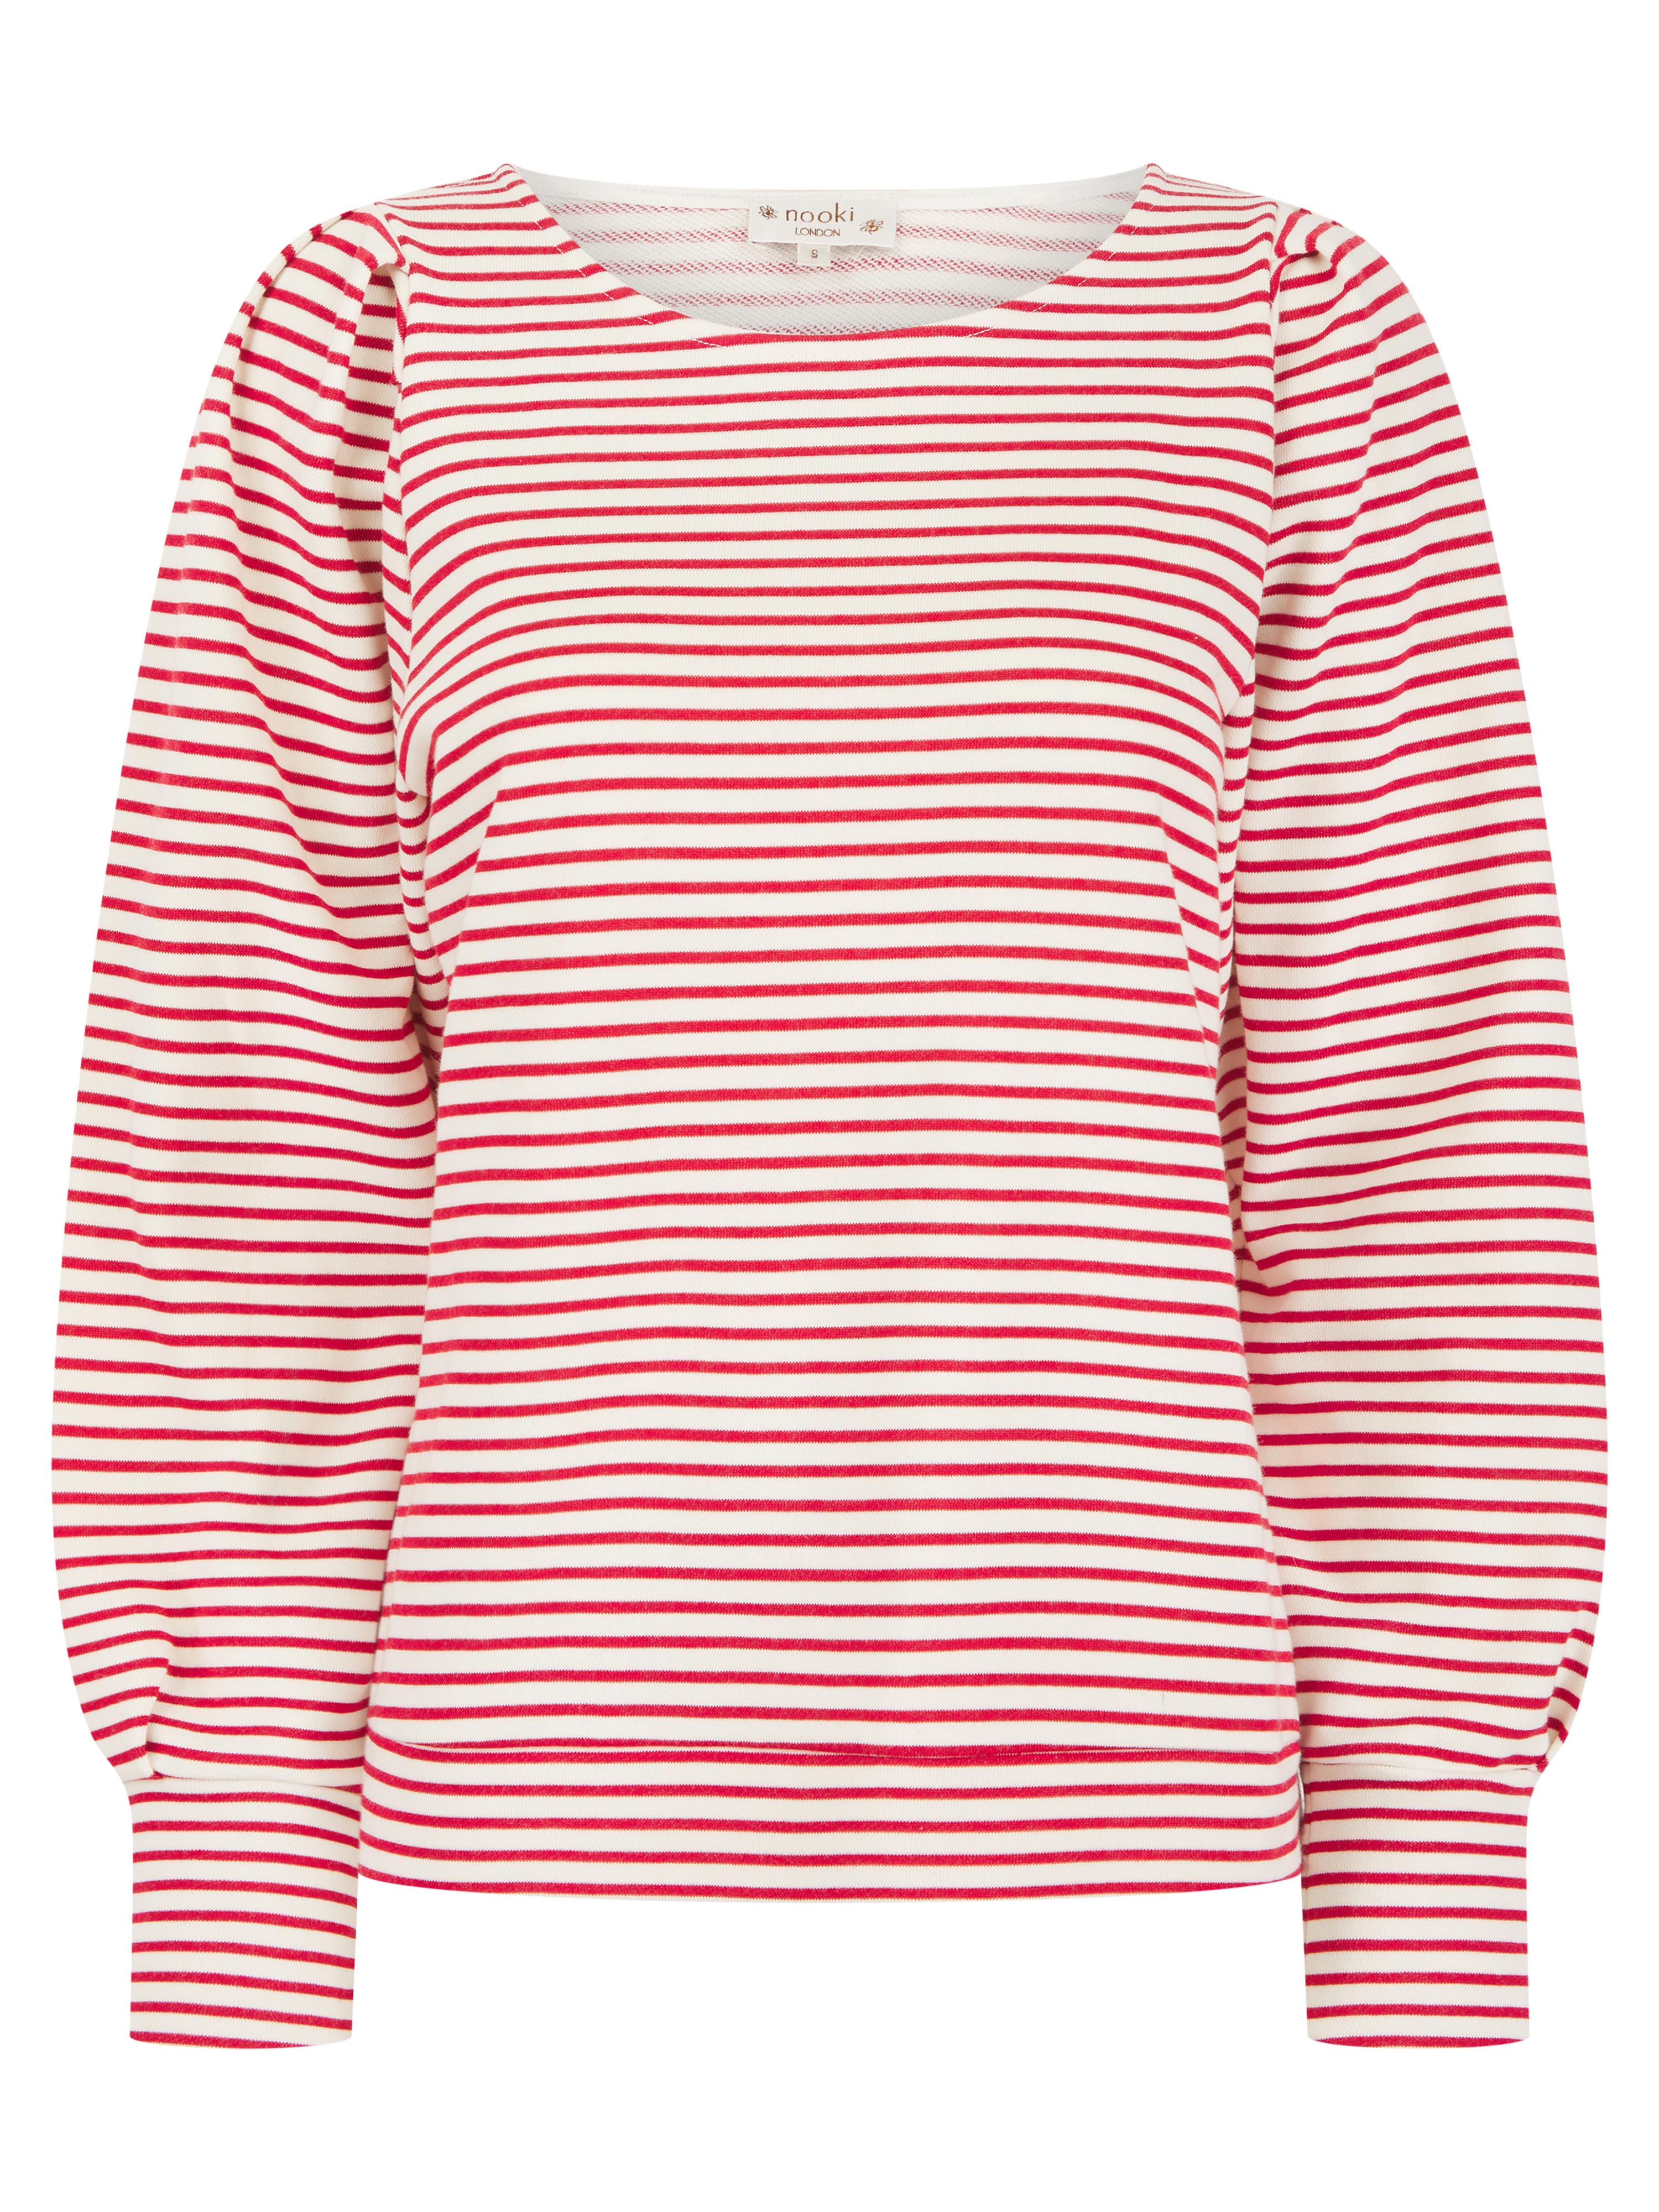 Helena Sweatshirt in Red Mix